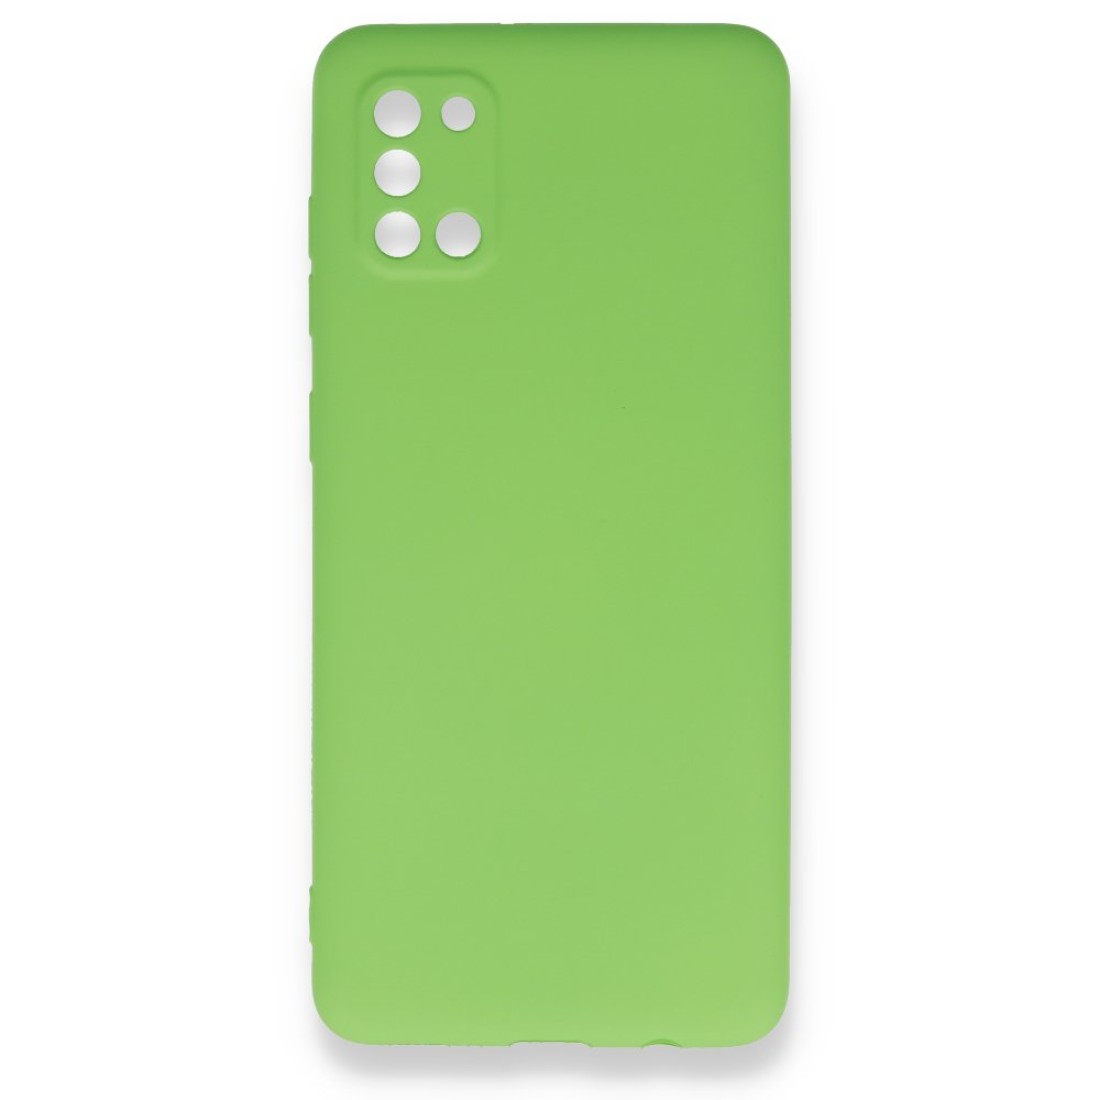 Samsung Galaxy A31 Kılıf Premium Rubber Silikon - Yeşil